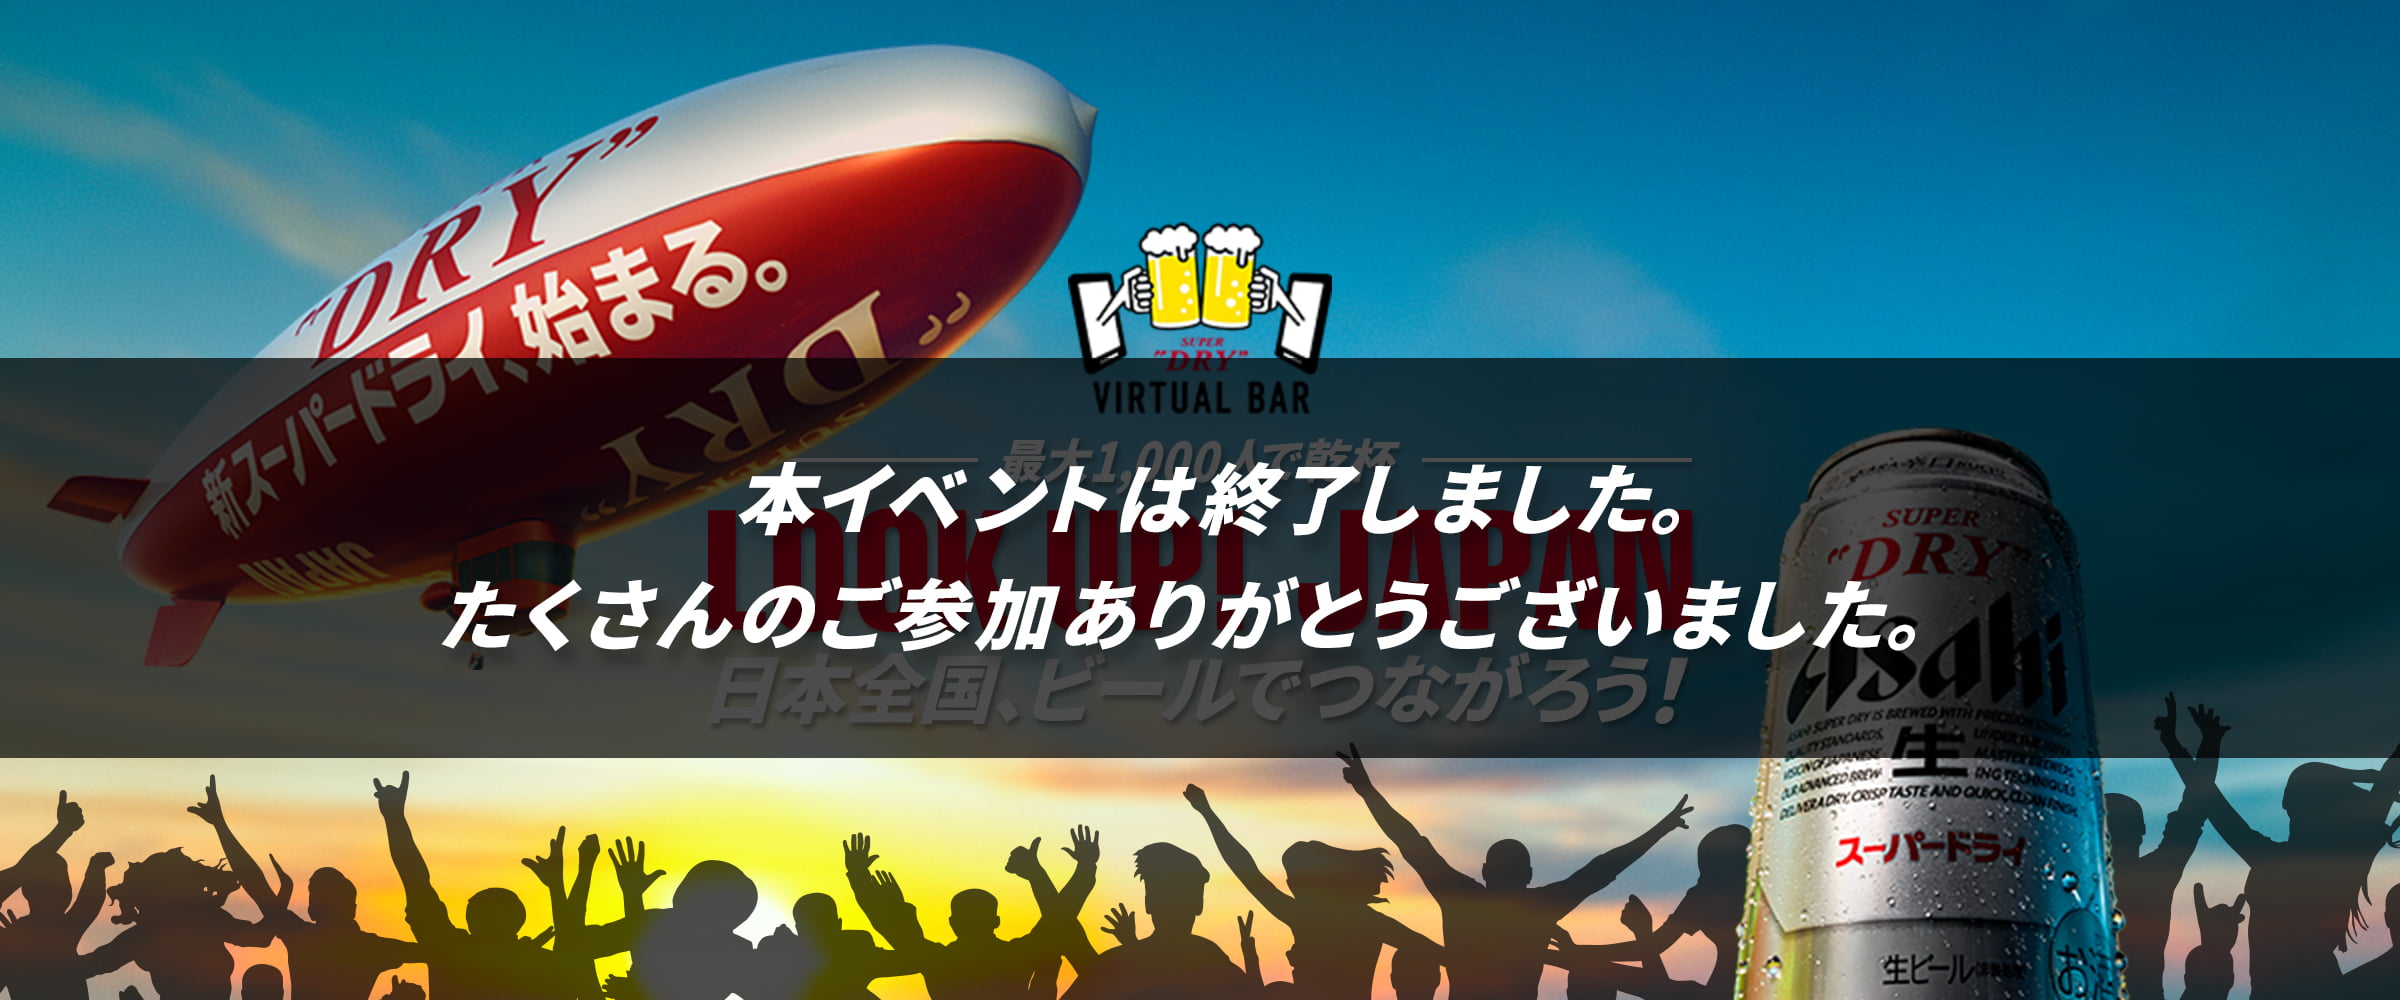 LOOK UP！JAPAN<br>日本全国、ビールでつながろう！<br>ASAHI SUPER DRY VIRTUAL BAR